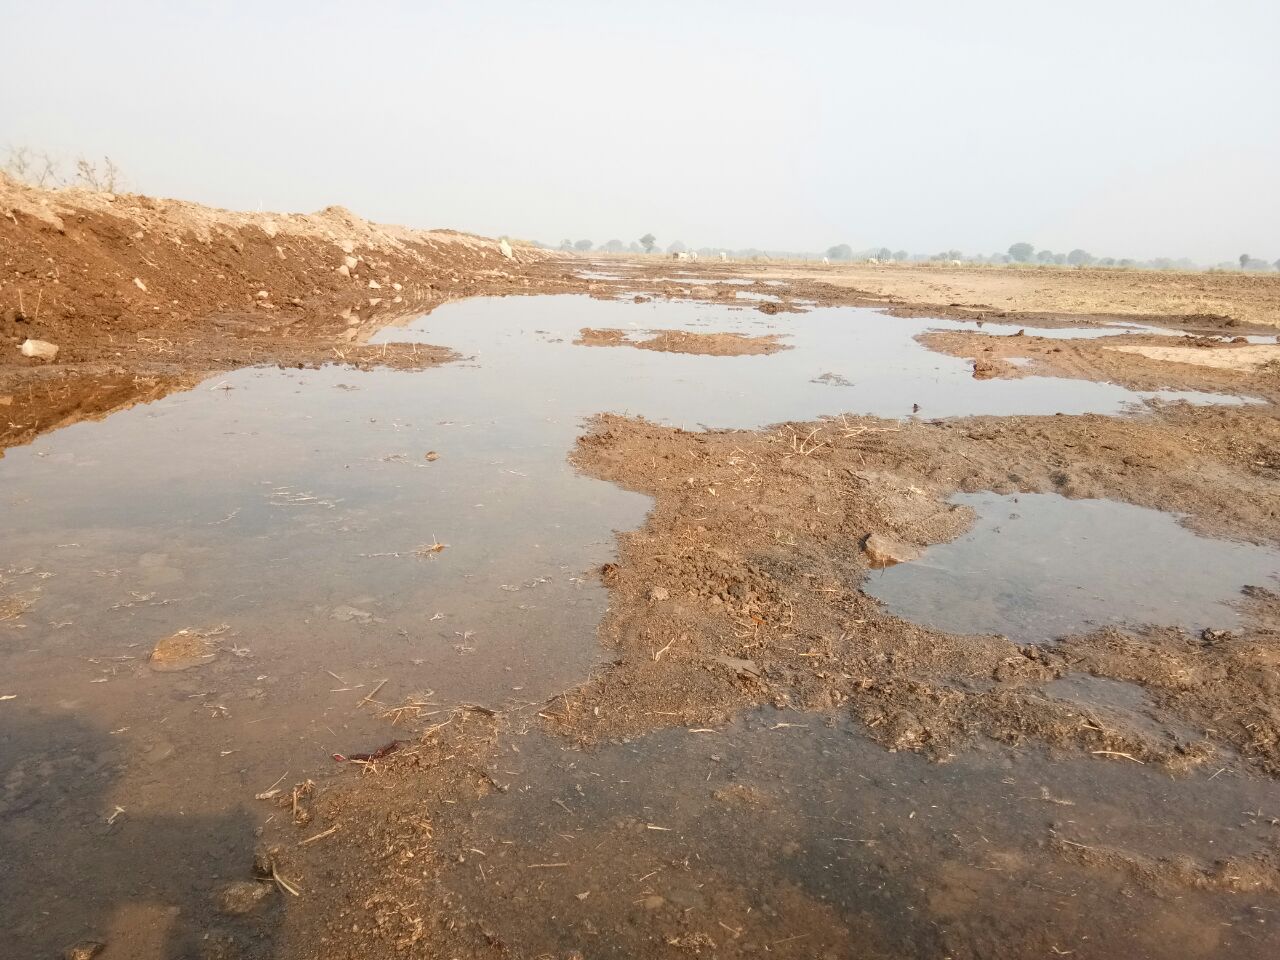 BHIG NEWS: किसानों पर संकट बादल मंडराना शुरू , 2 दिन पहले भीमसागर बांध नहरों हुआ जल प्रवाह शुरू , अब जगह -जगह सिपेज से खेतों में पानी भराना हुआ शुरू